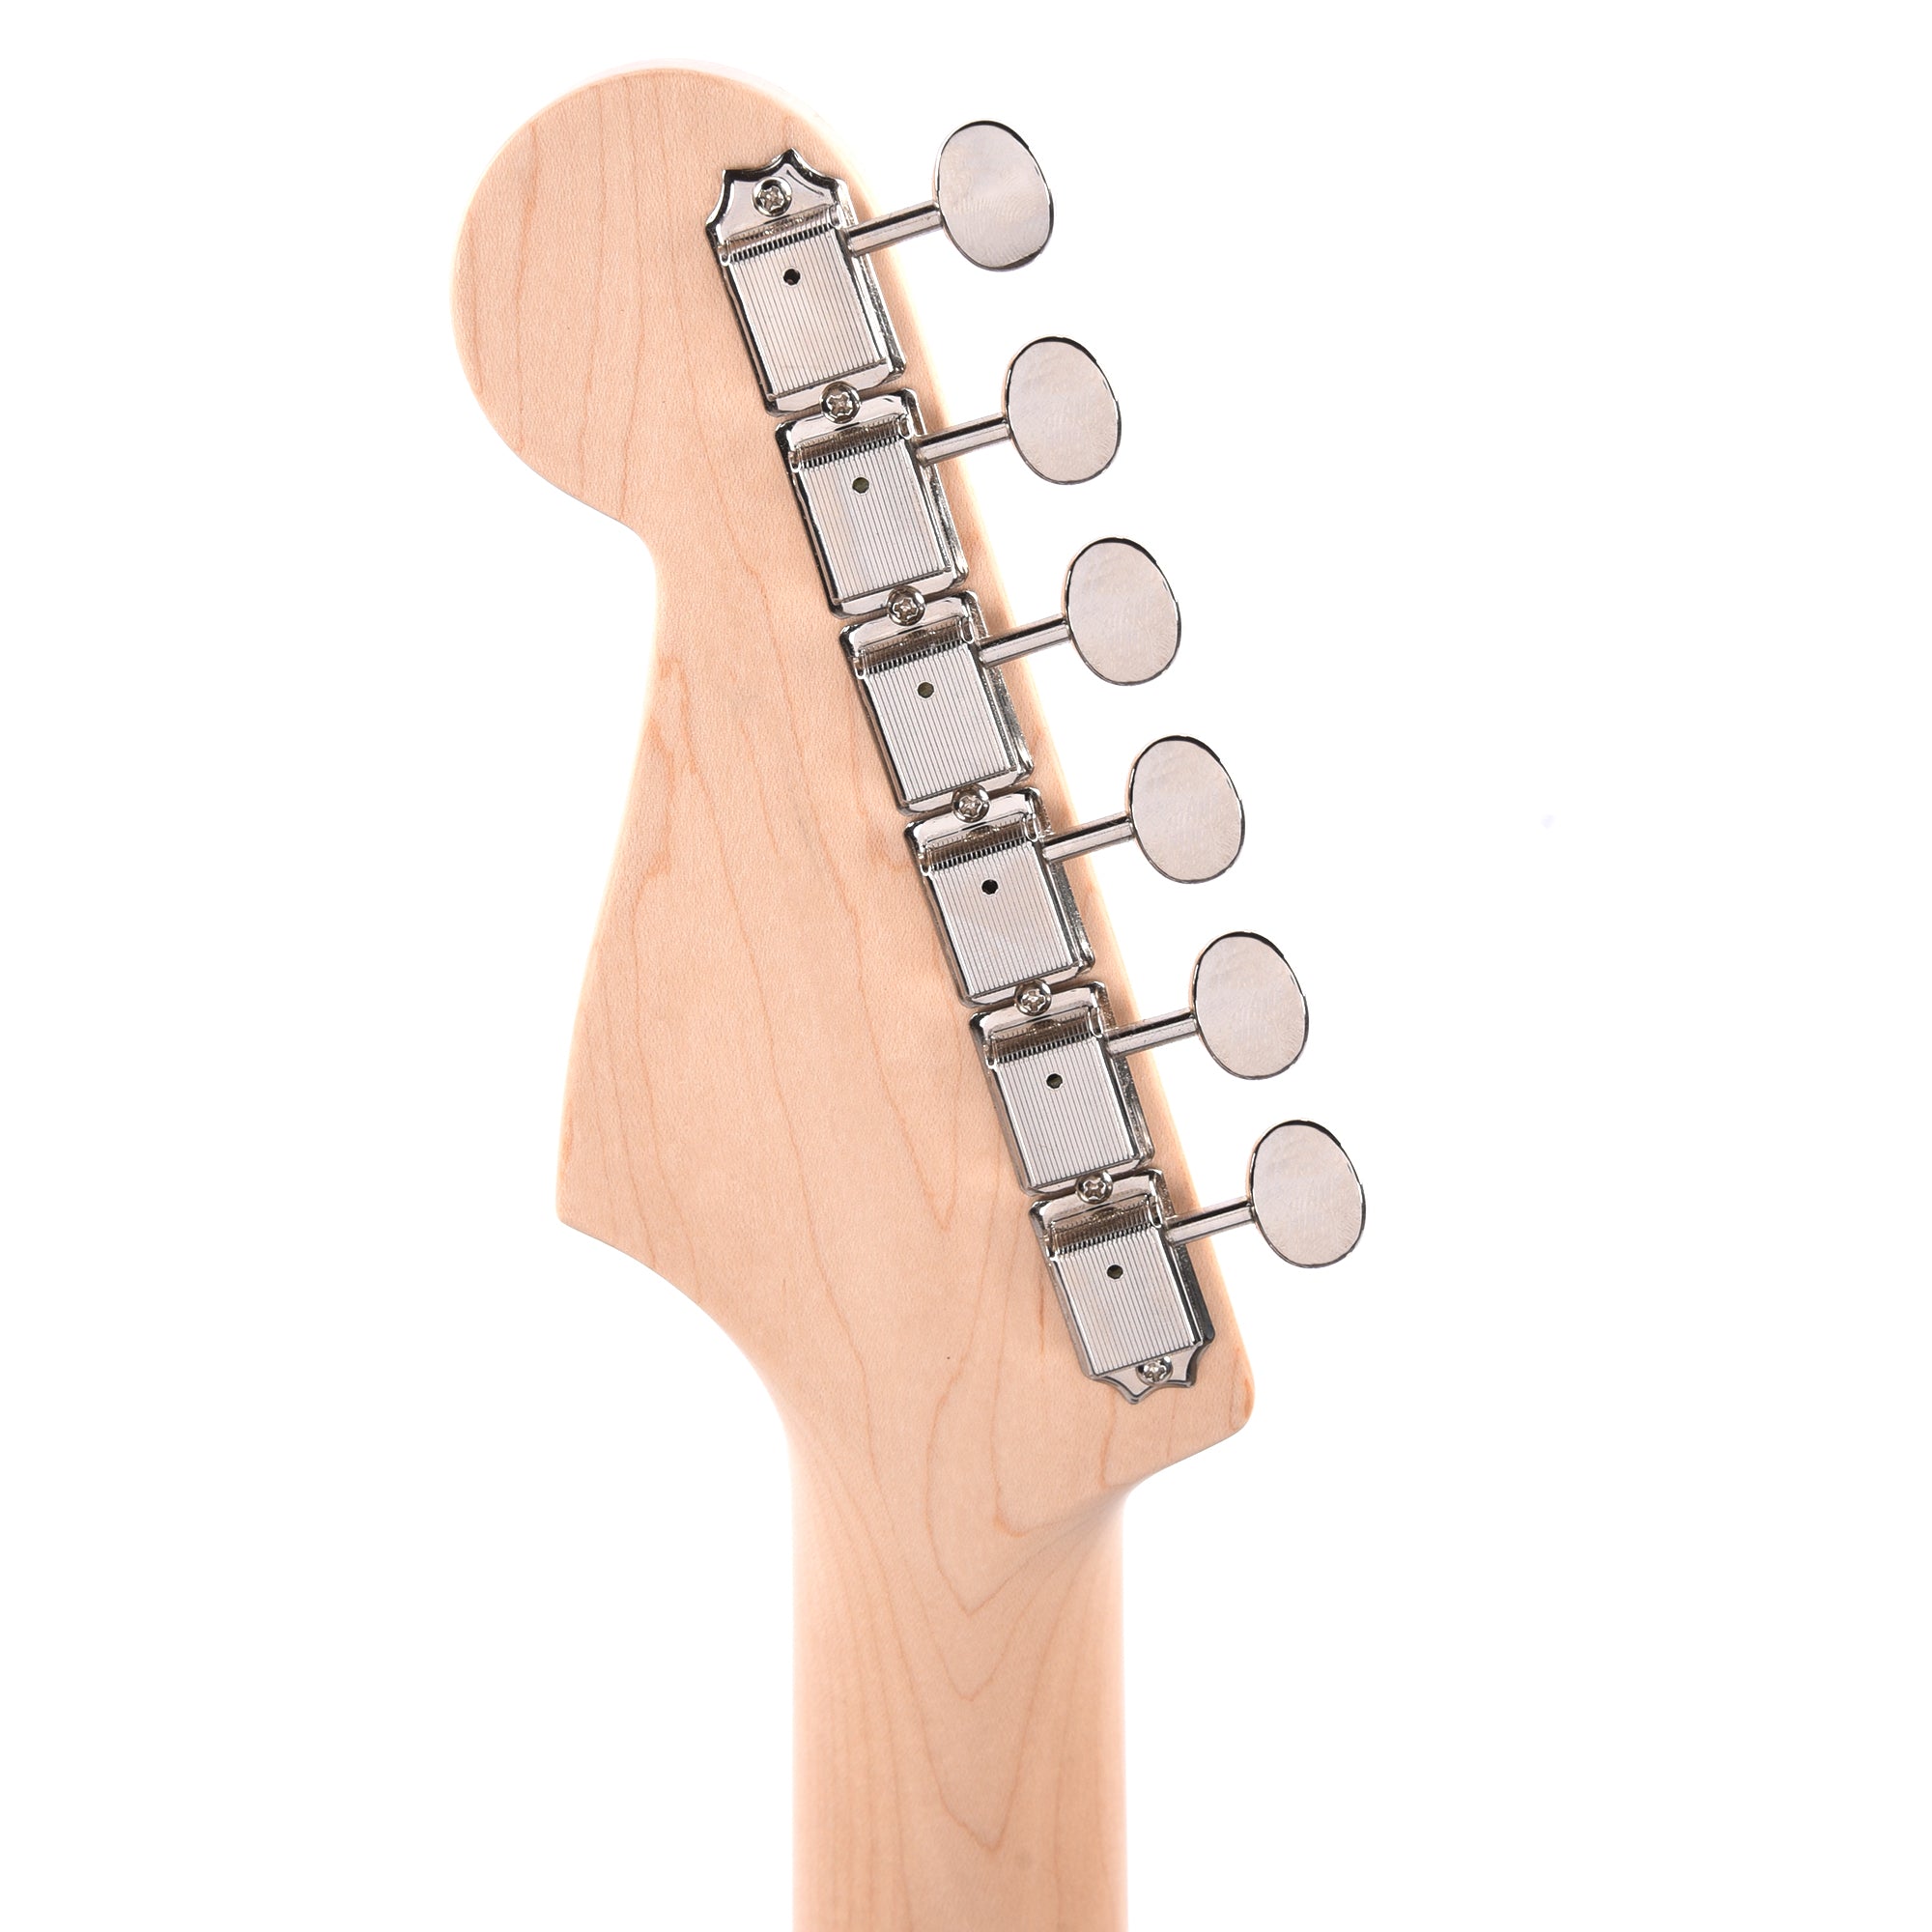 Fender Artist Eric Clapton Stratocaster 